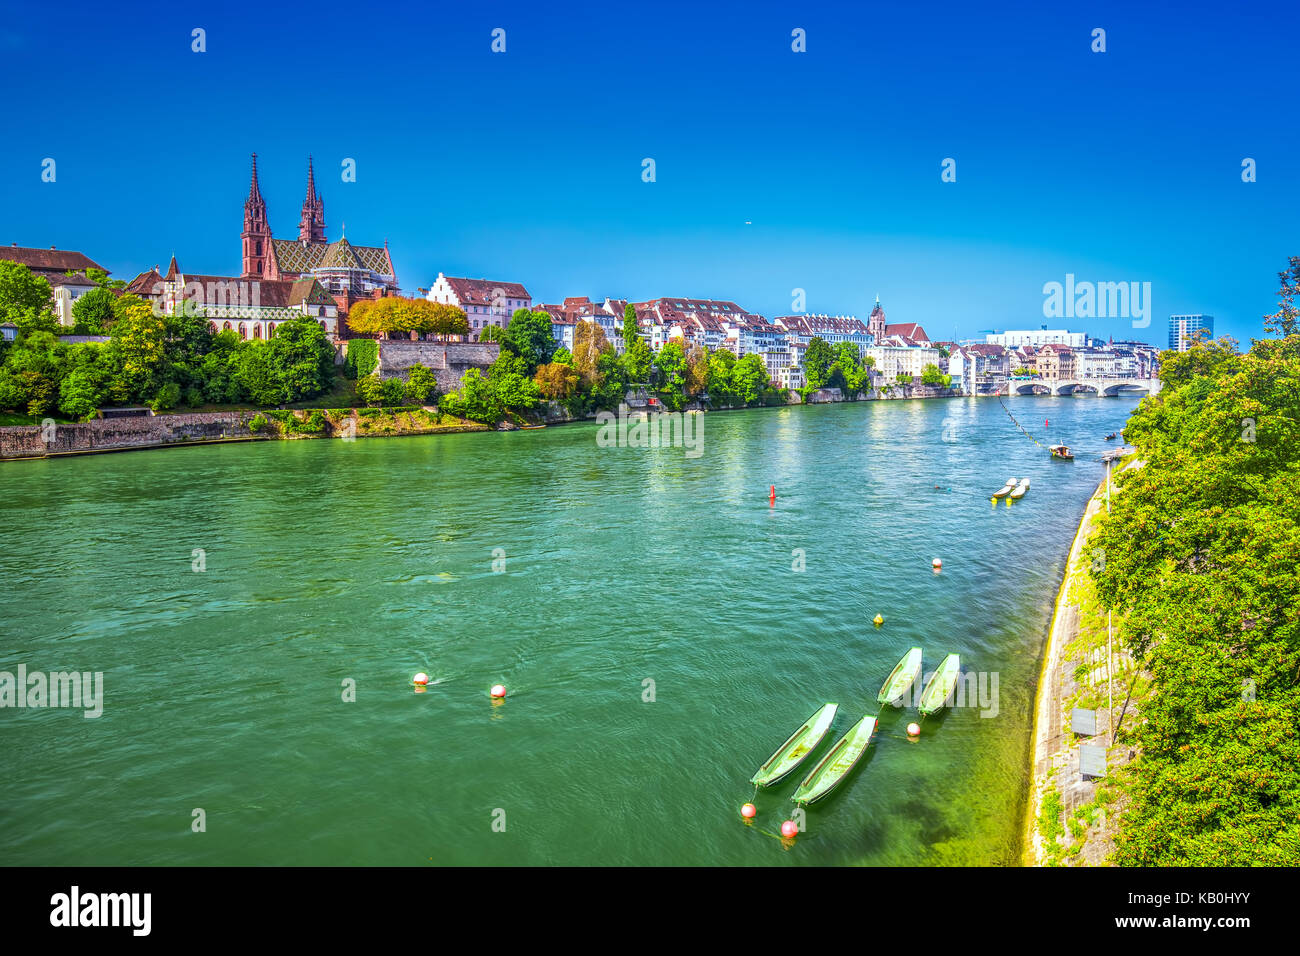 Centre de la vieille ville de Bâle avec la cathédrale de Munster et le Rhin, la Suisse, l'Europe. Bâle est une ville du nord-ouest de la Suisse sur la rivière rhi Banque D'Images